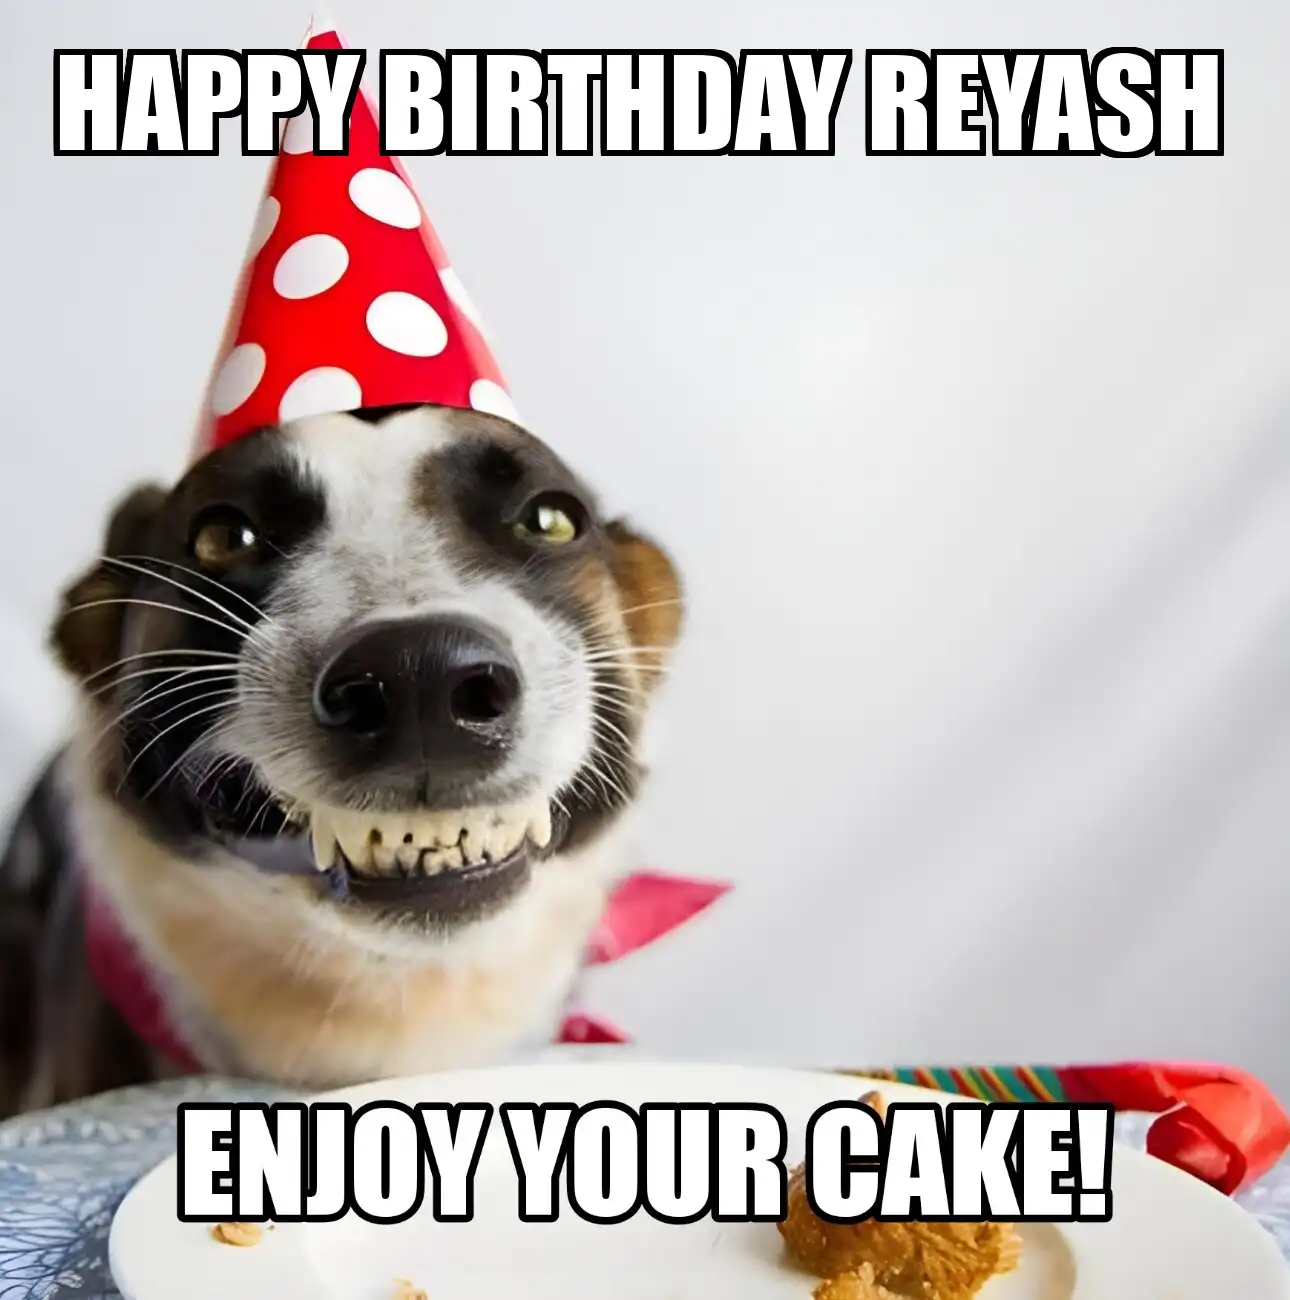 Happy Birthday Reyash Enjoy Your Cake Dog Meme